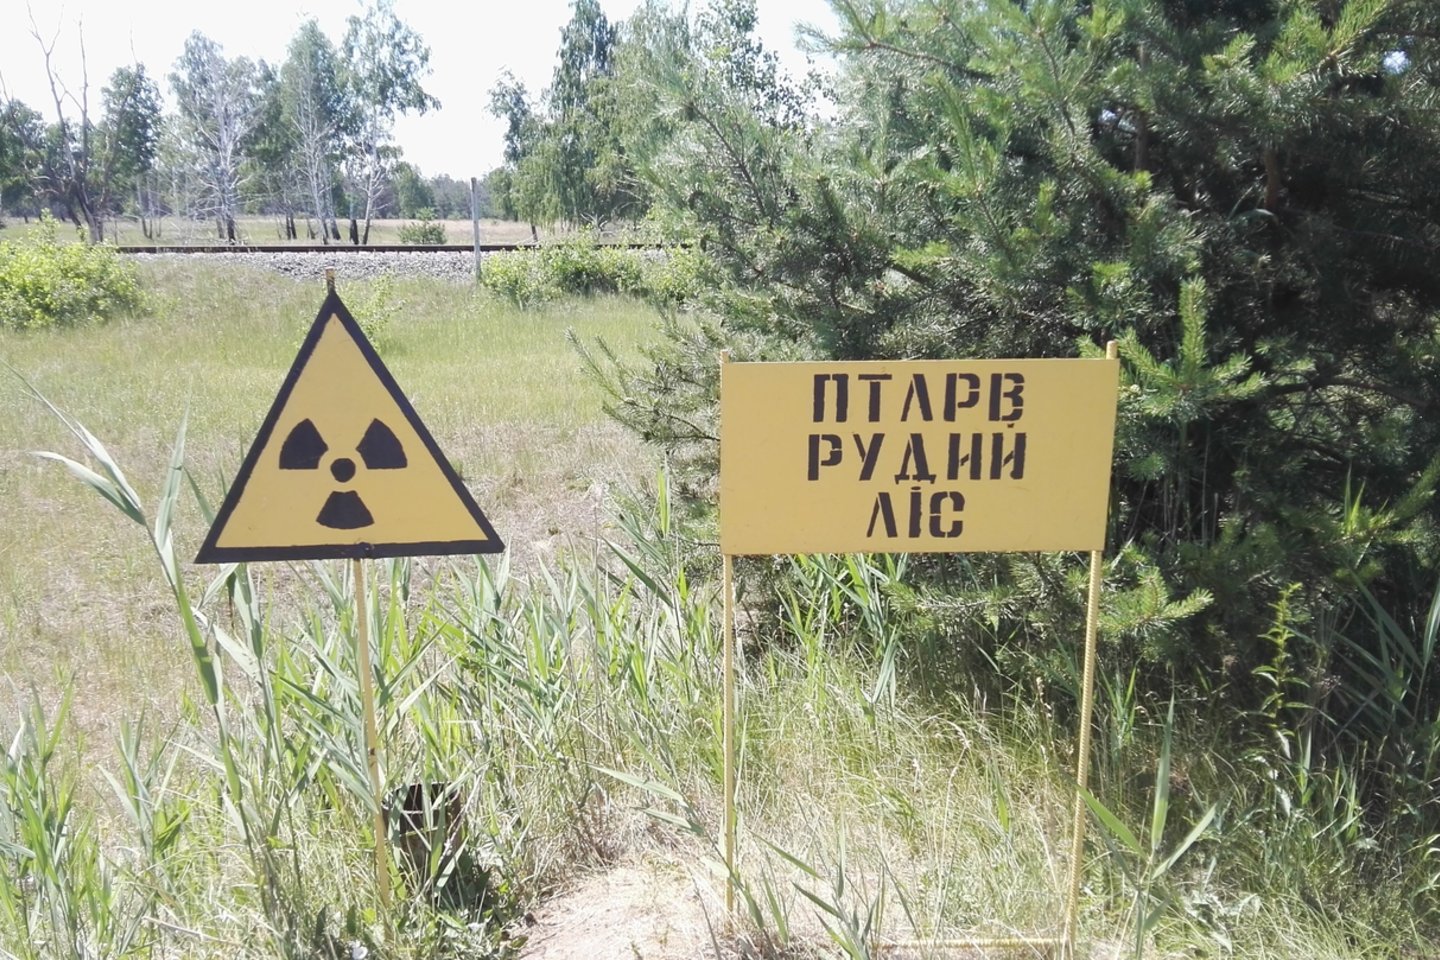  Vaizdai iš Černobylio zonos. Šiuo metu tai vien labiaušiai užterštų vietų.Šalia yra radiacijos išdeginti rudieji miškai<br> E.Grižibauskienės nuotr.